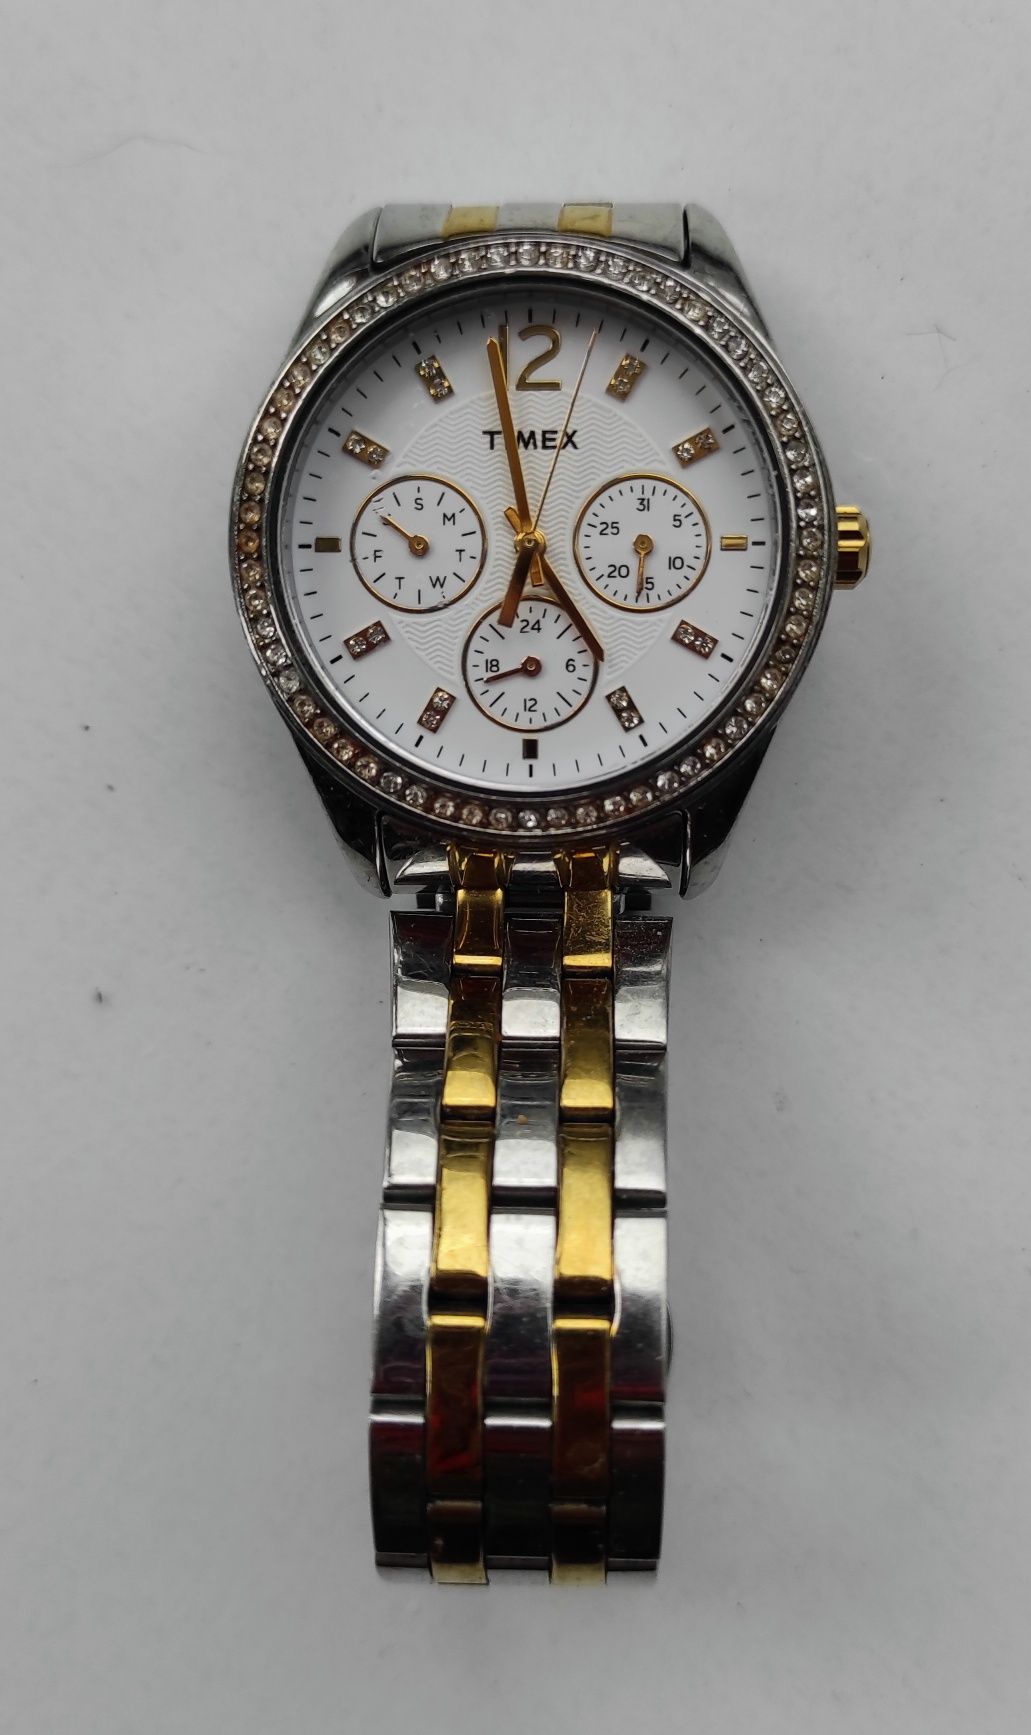 Zegarek damski Timex bransoleta kwarcowy